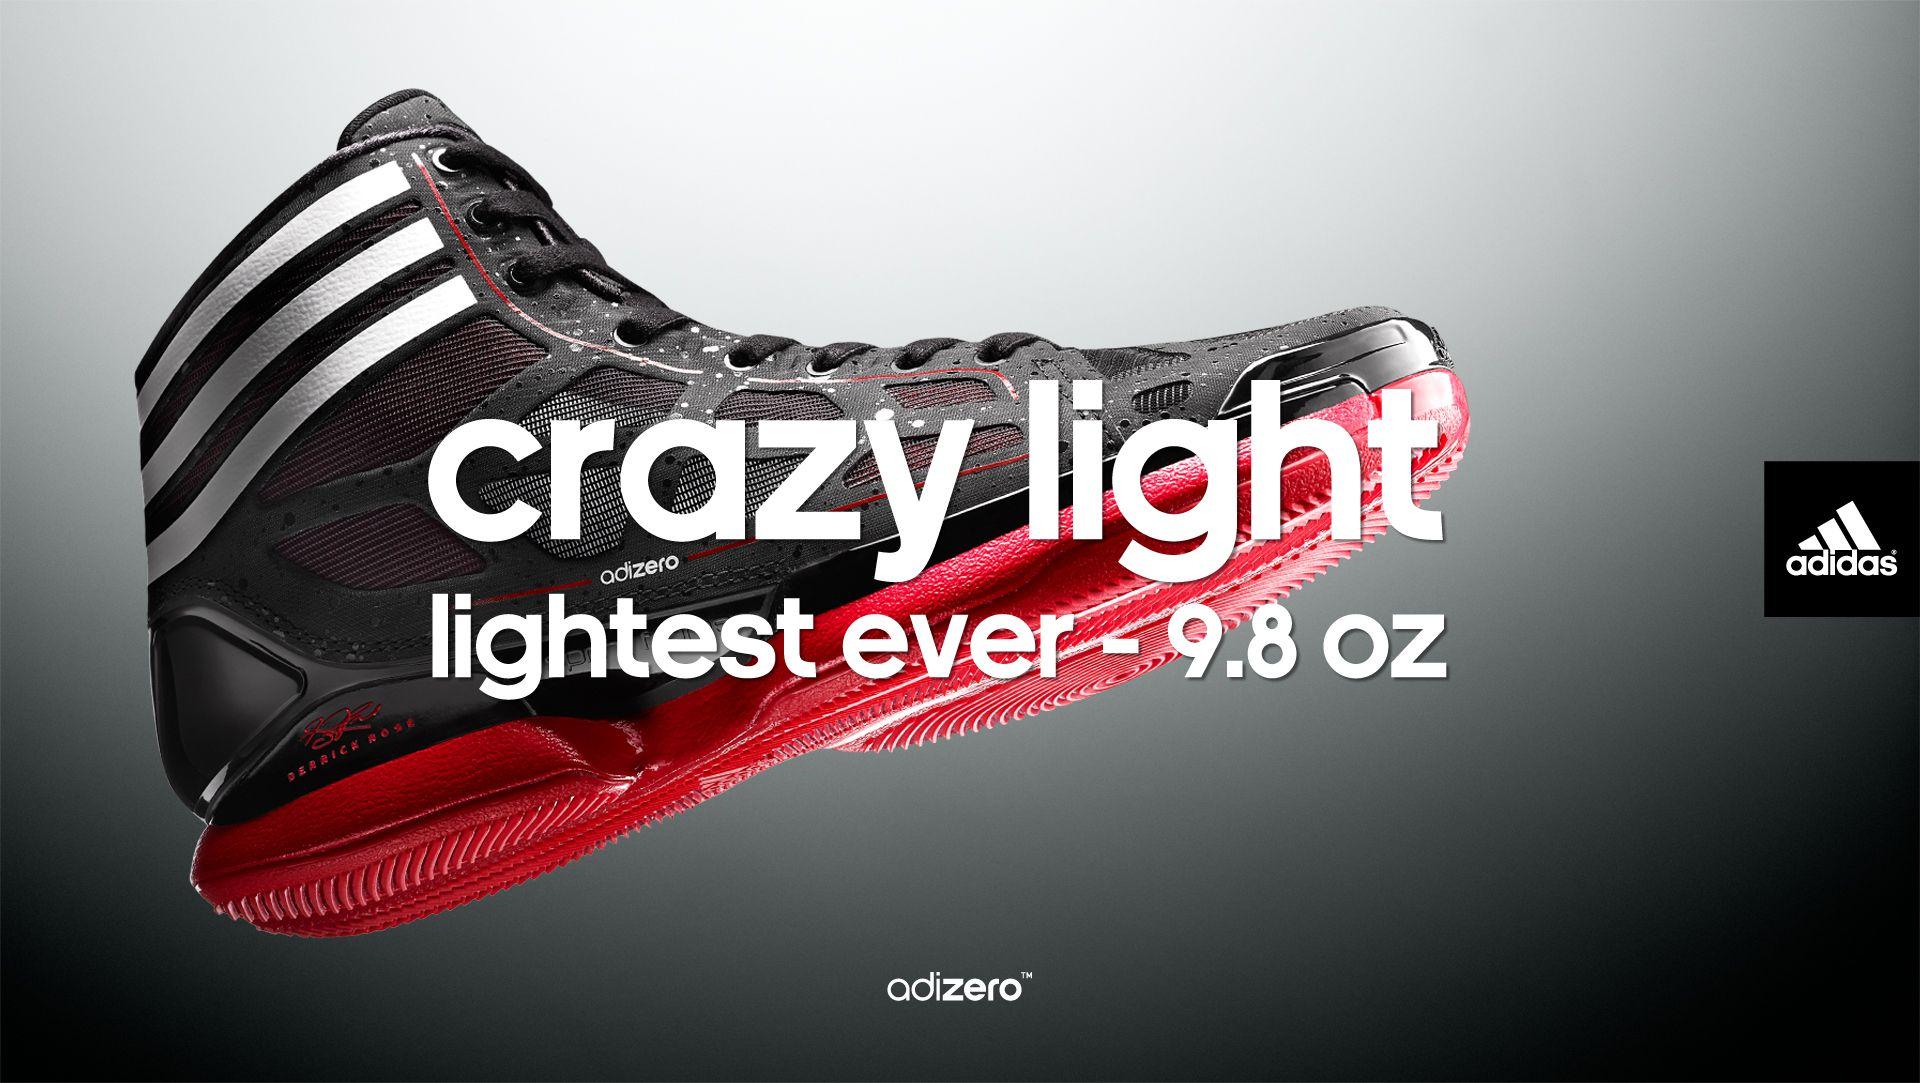 adidas adiZero Crazy Light Rose Wallpaper. Eastbay Blog